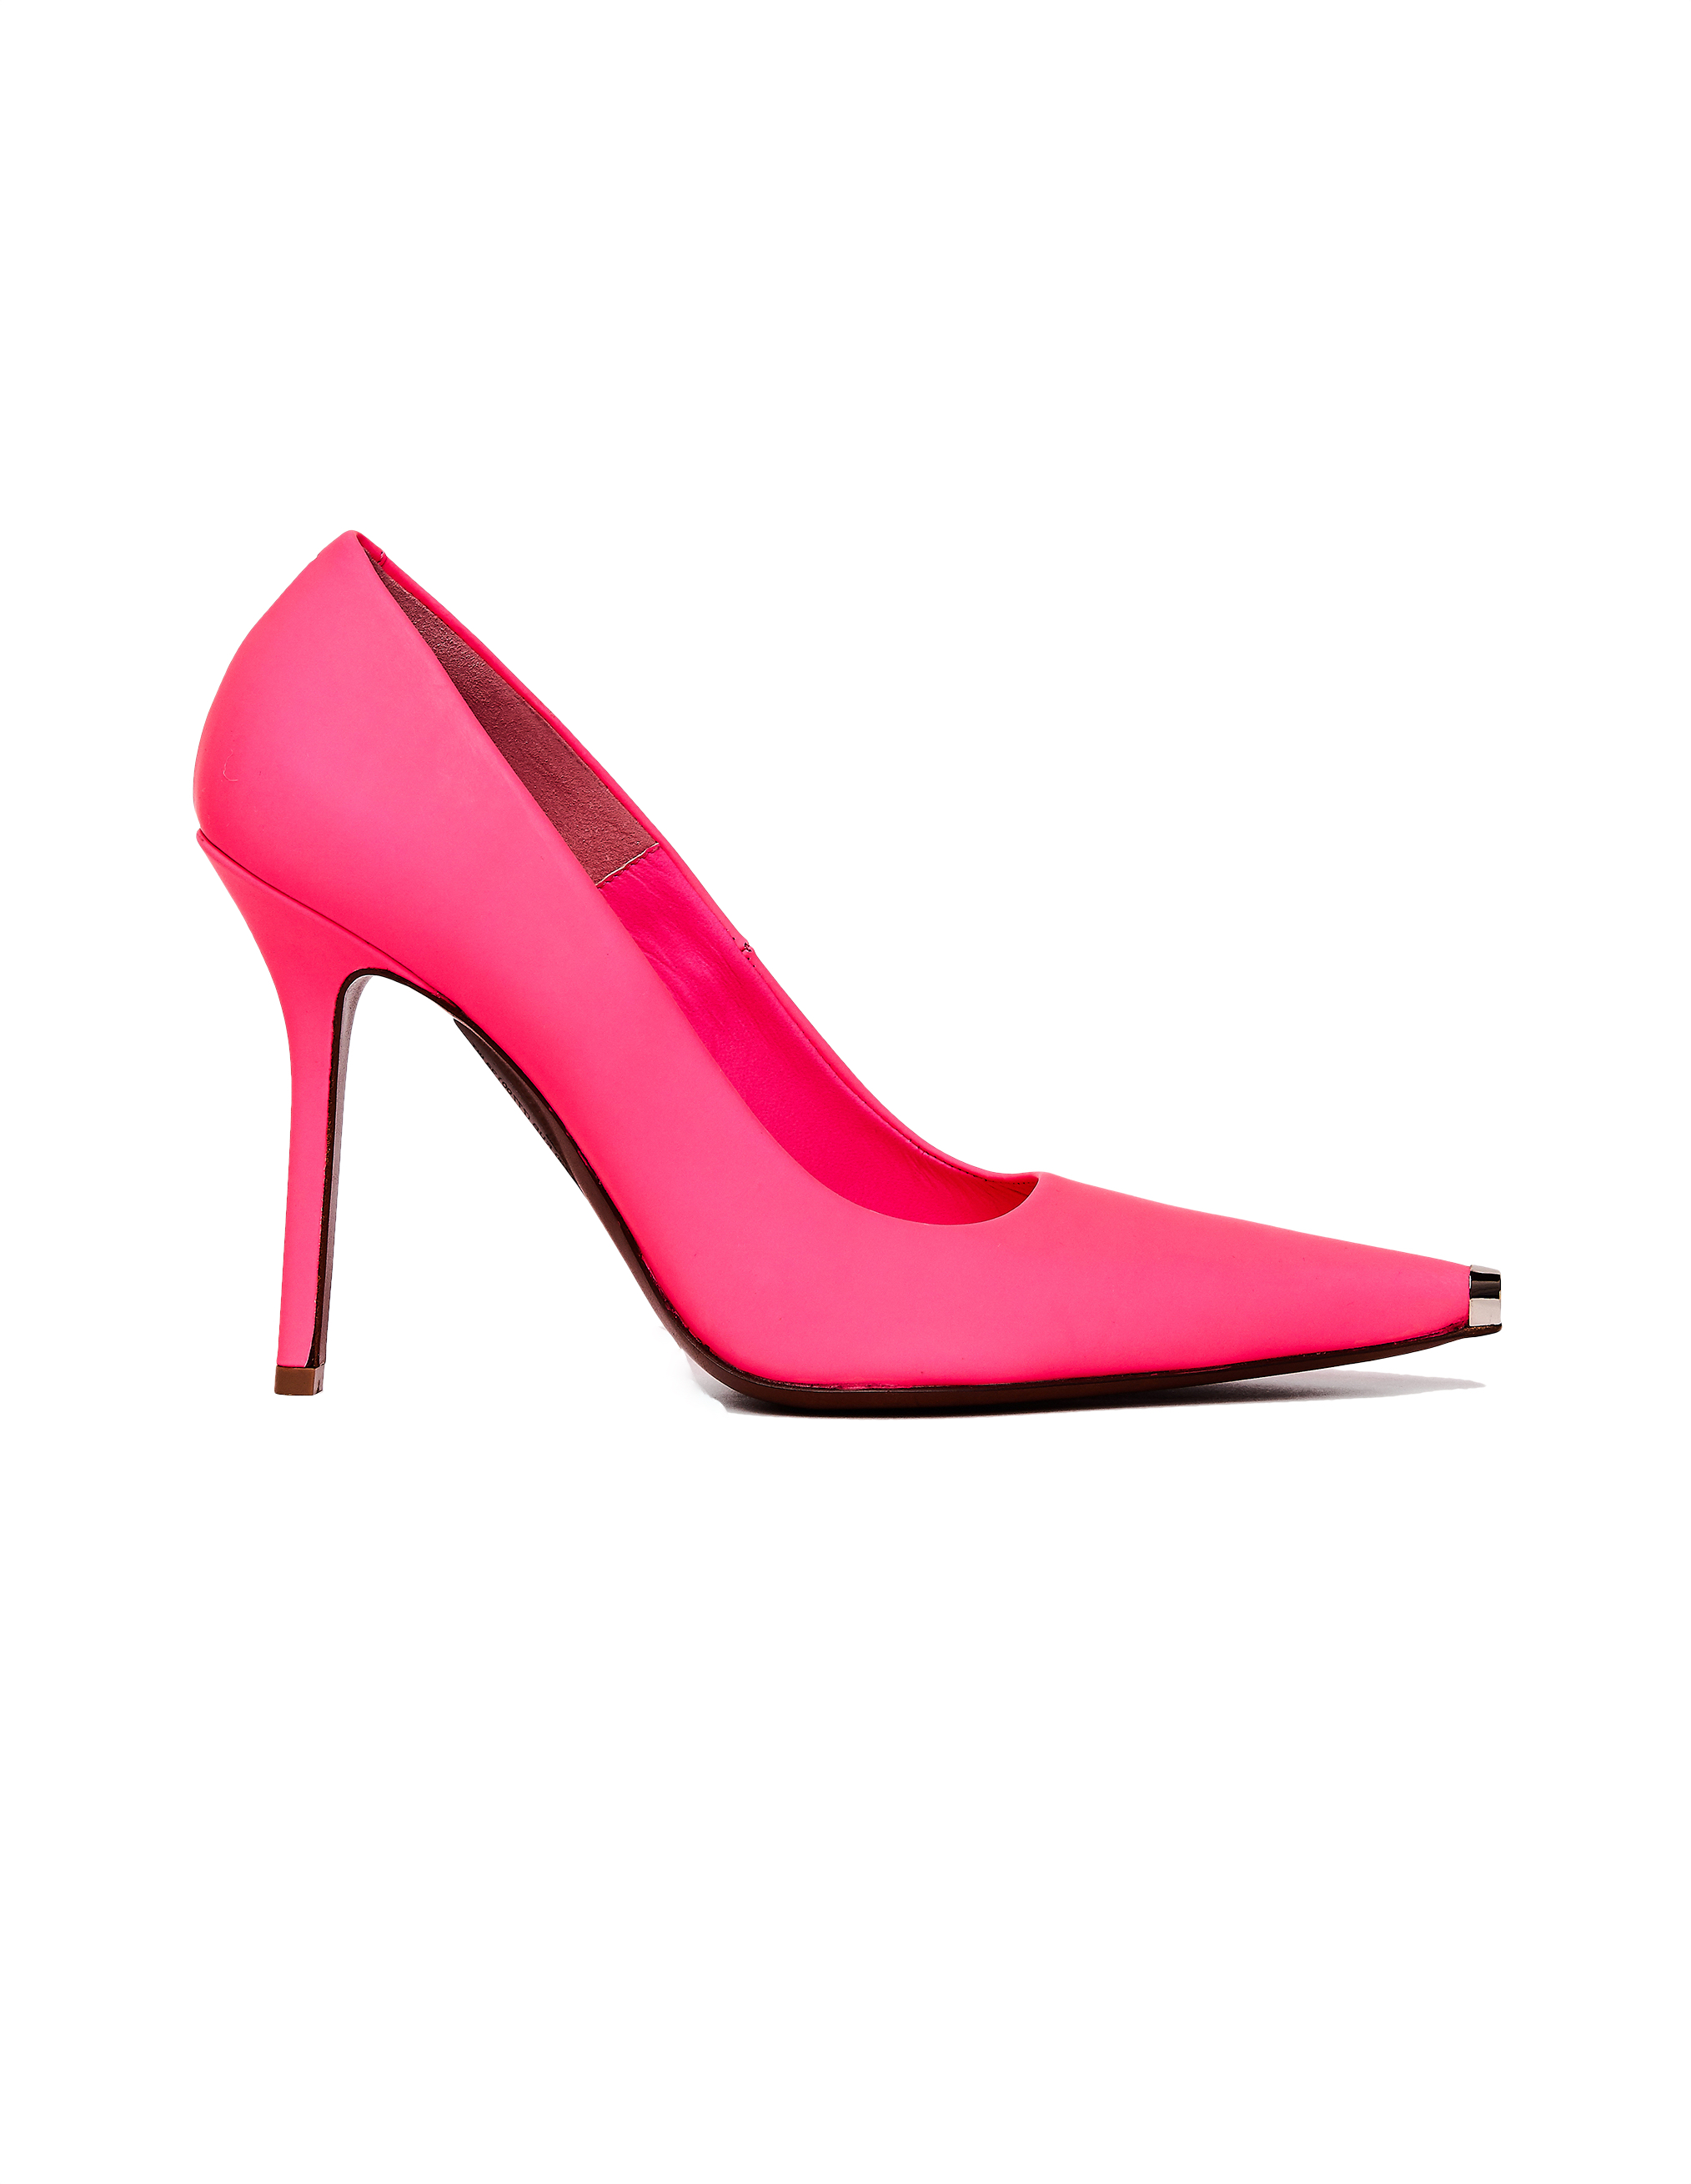 Розовые кожаные туфли - Vetements SS20HE009/pink Фото 2